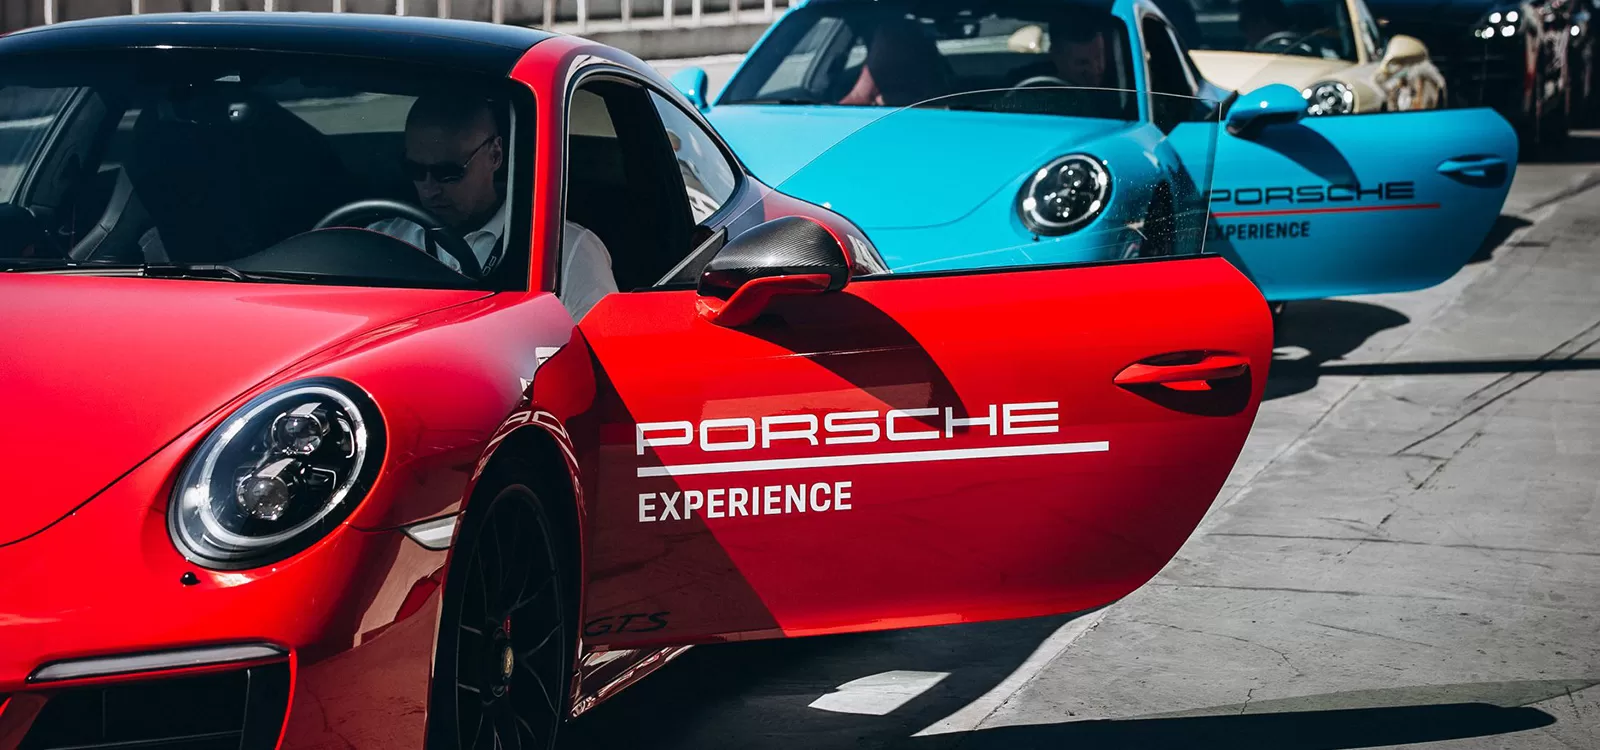 Мероприятие Porsche Driving Experience прошло 18 августа на АСК Нижегородское кольцо